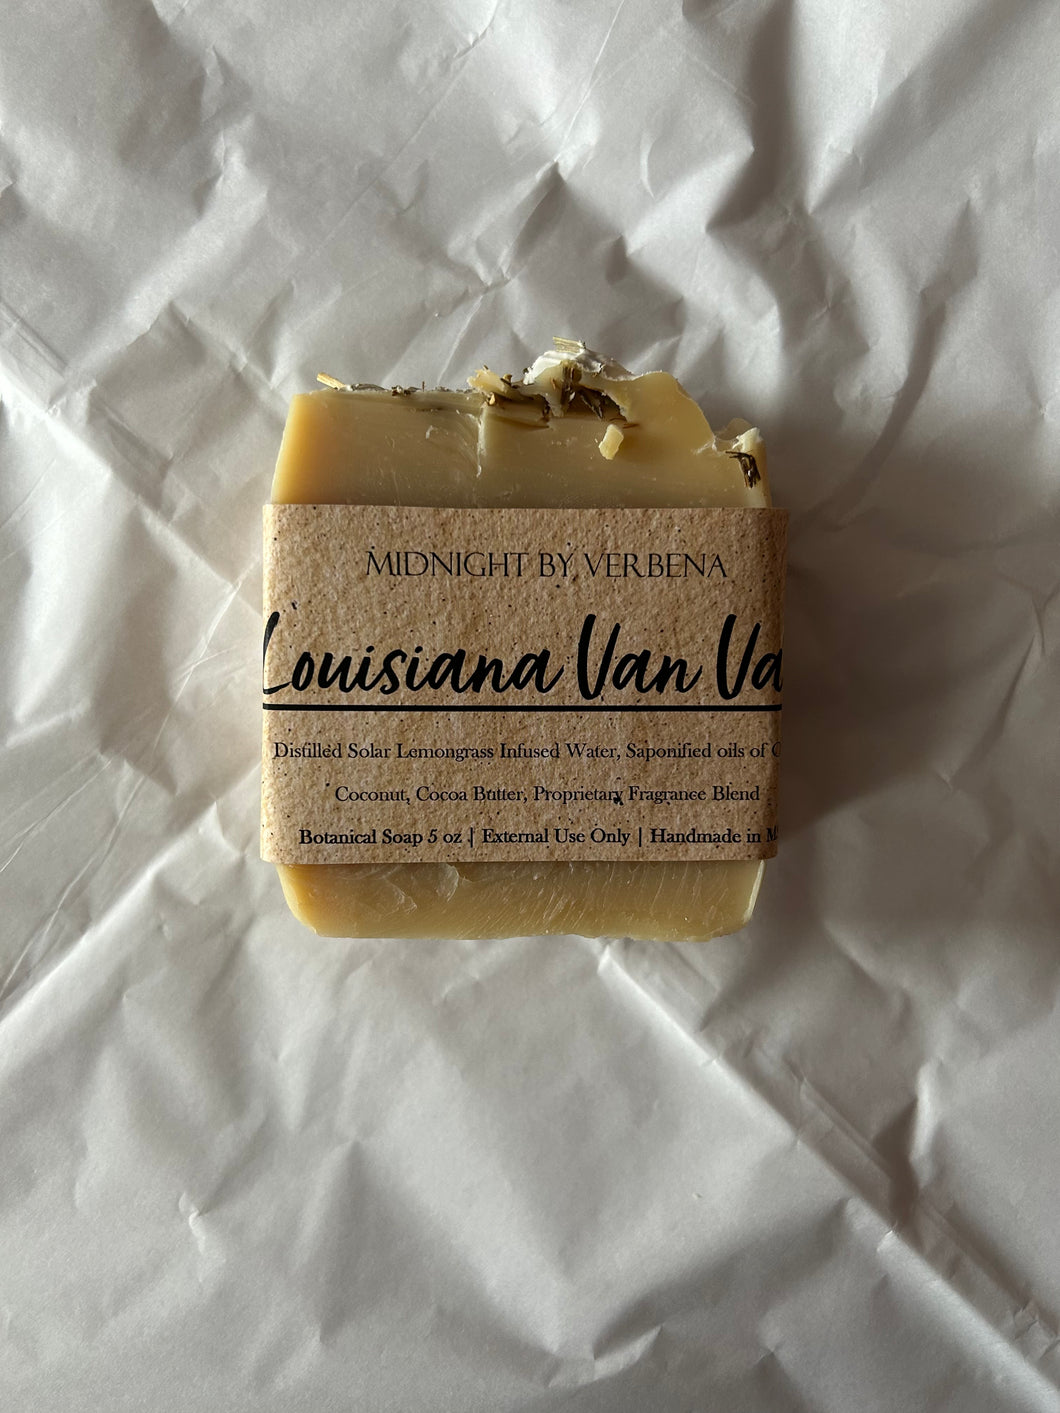 Louisiana Van Van Cold Process Soap